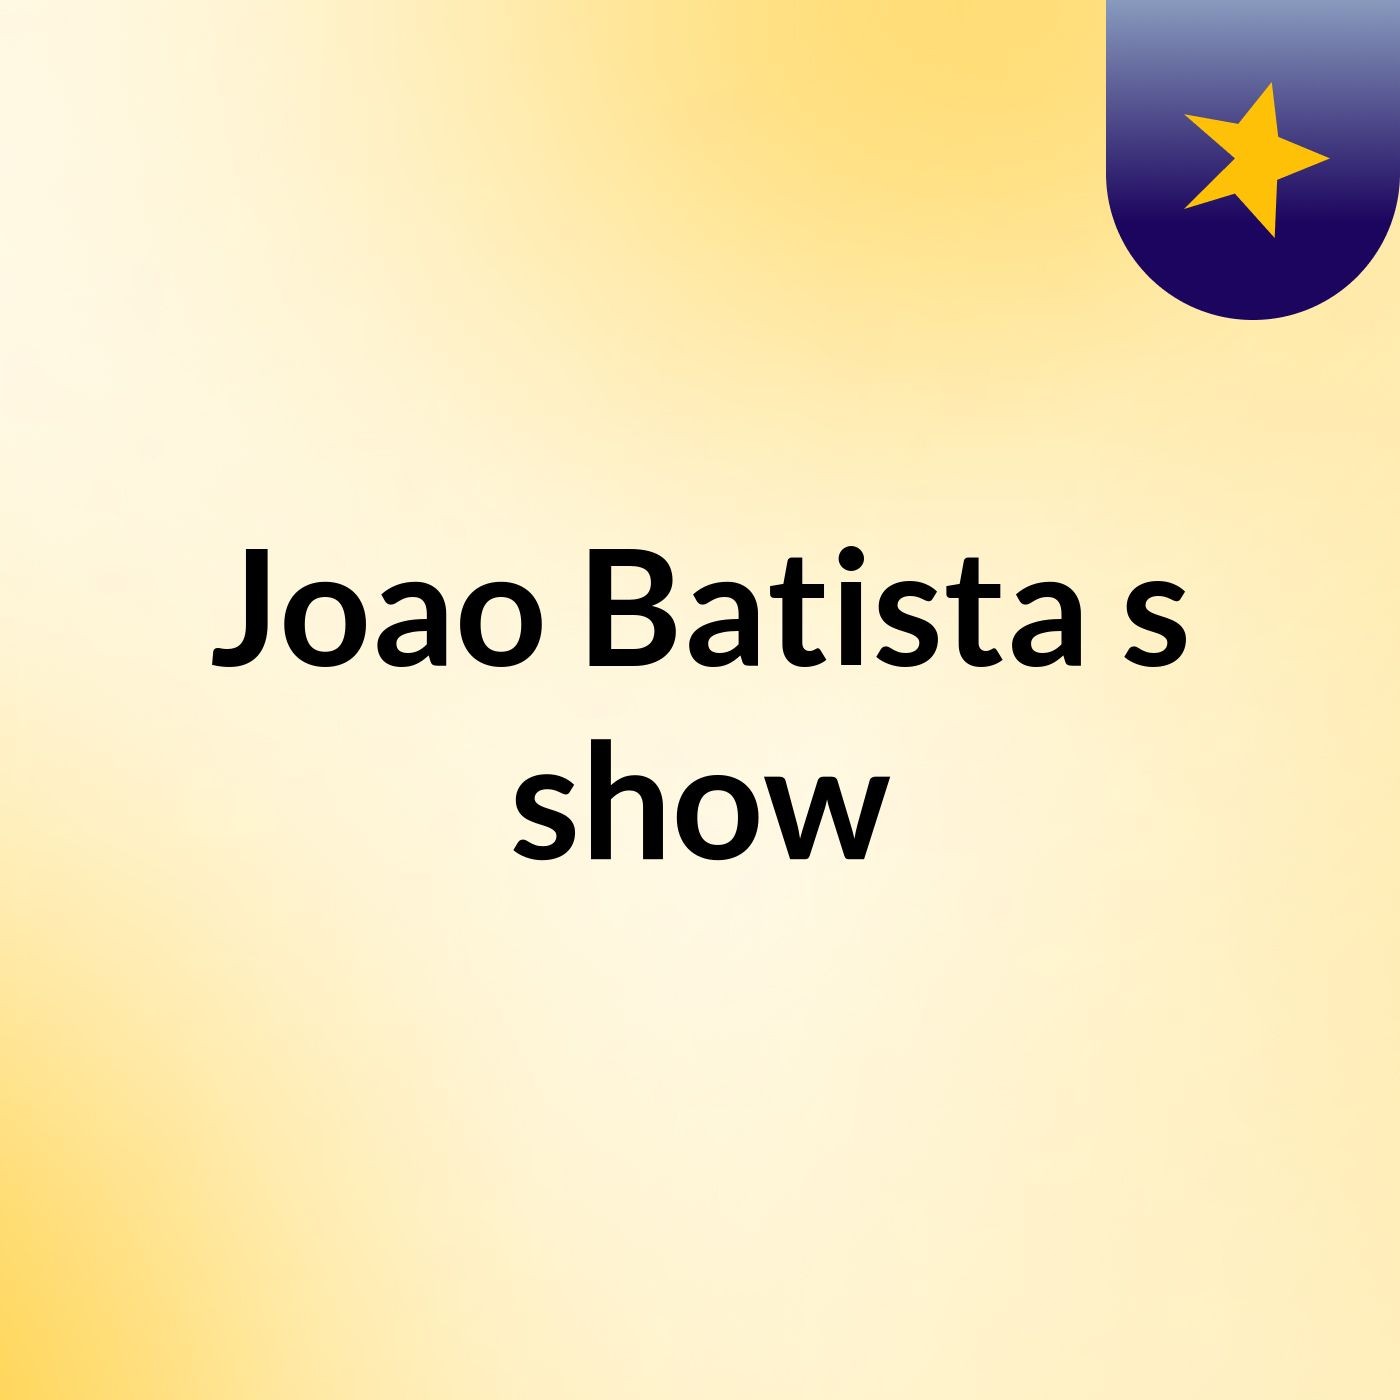 Joao Batista's show